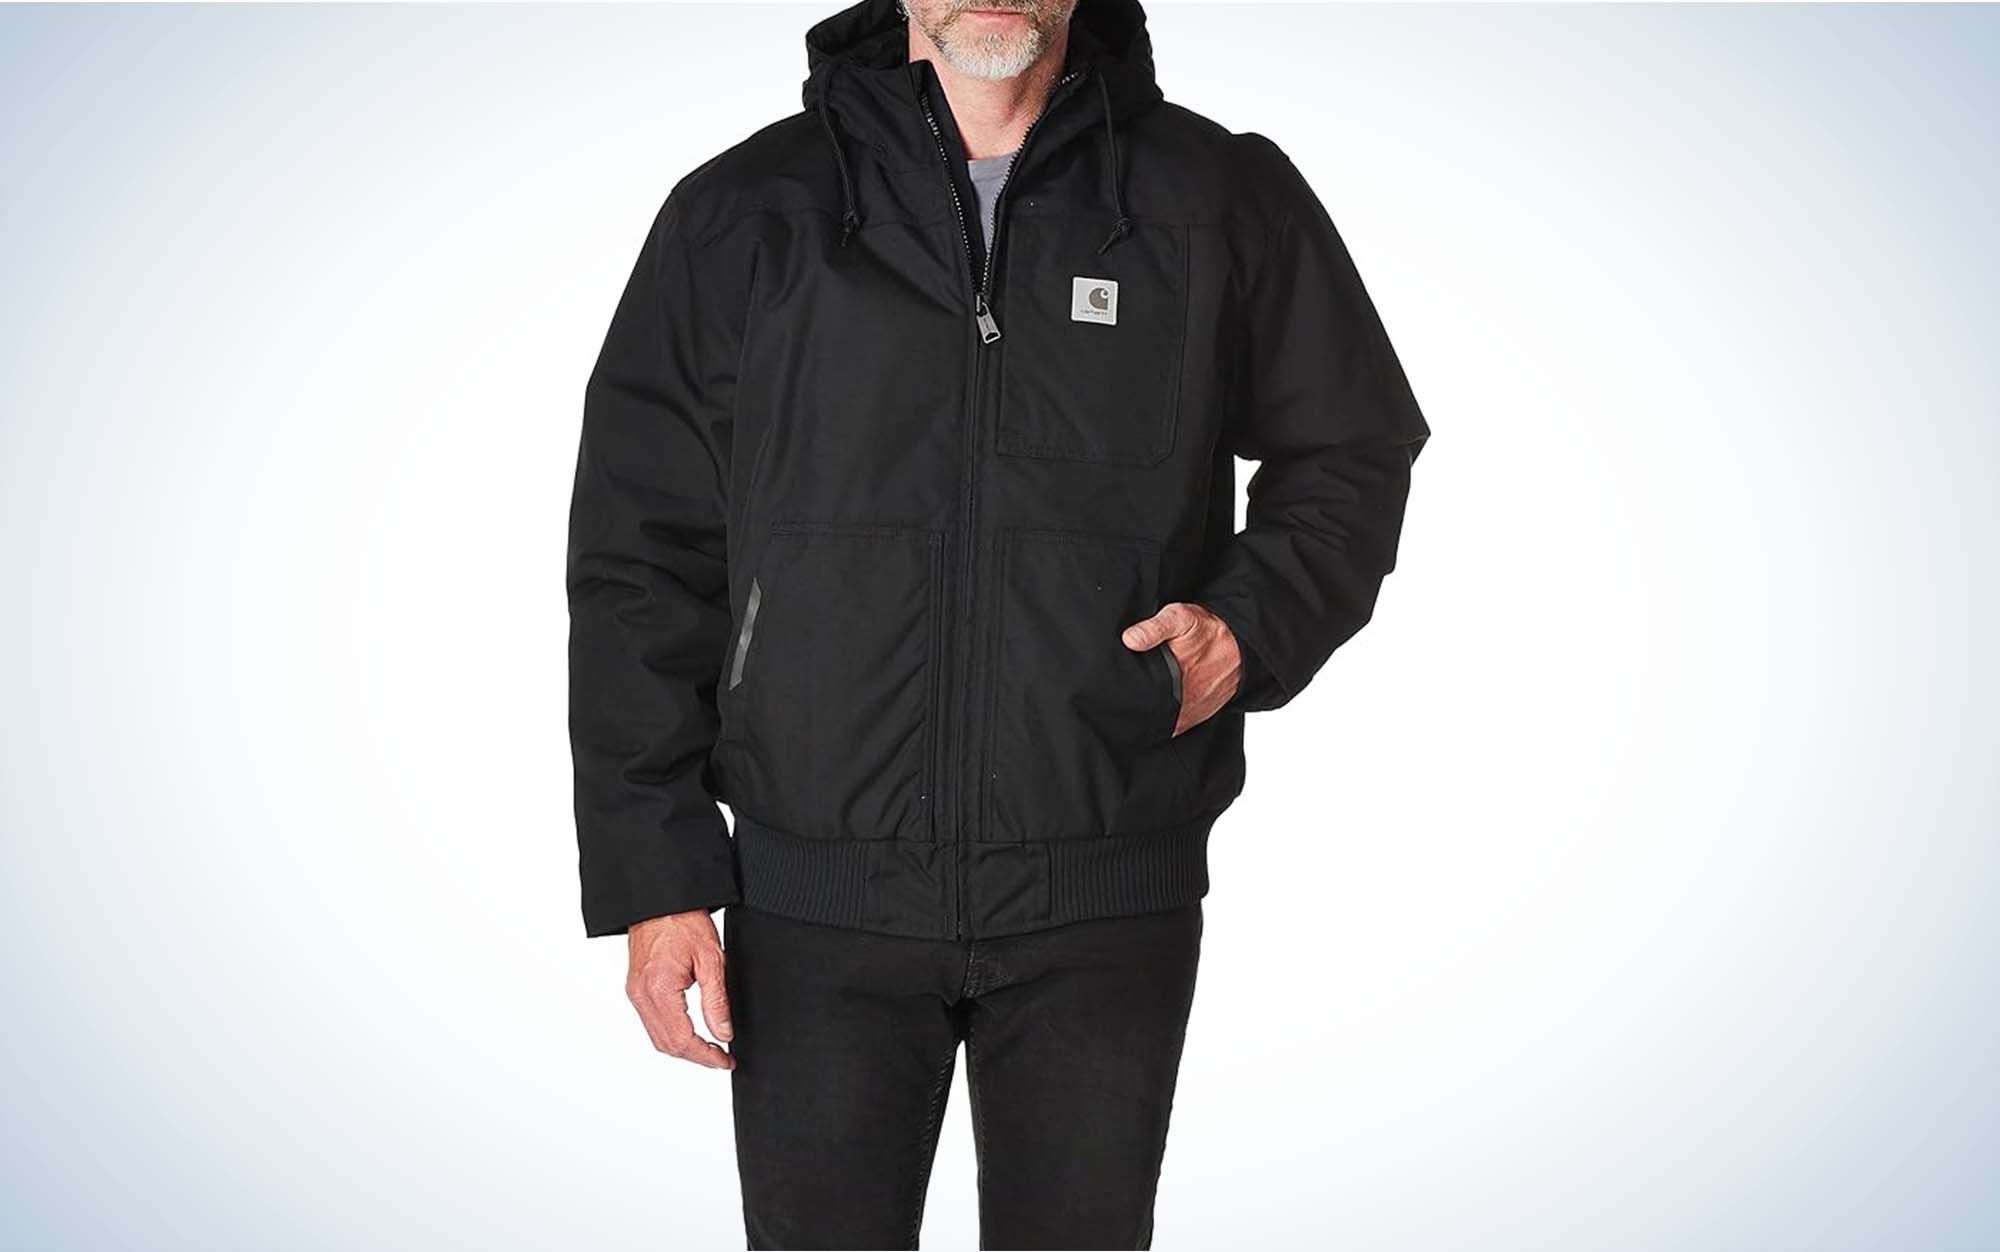 Black Suede Leather Full Zip Cinch Waist Sherpa Lined Heavy Winter Jacket  Men XL | eBay